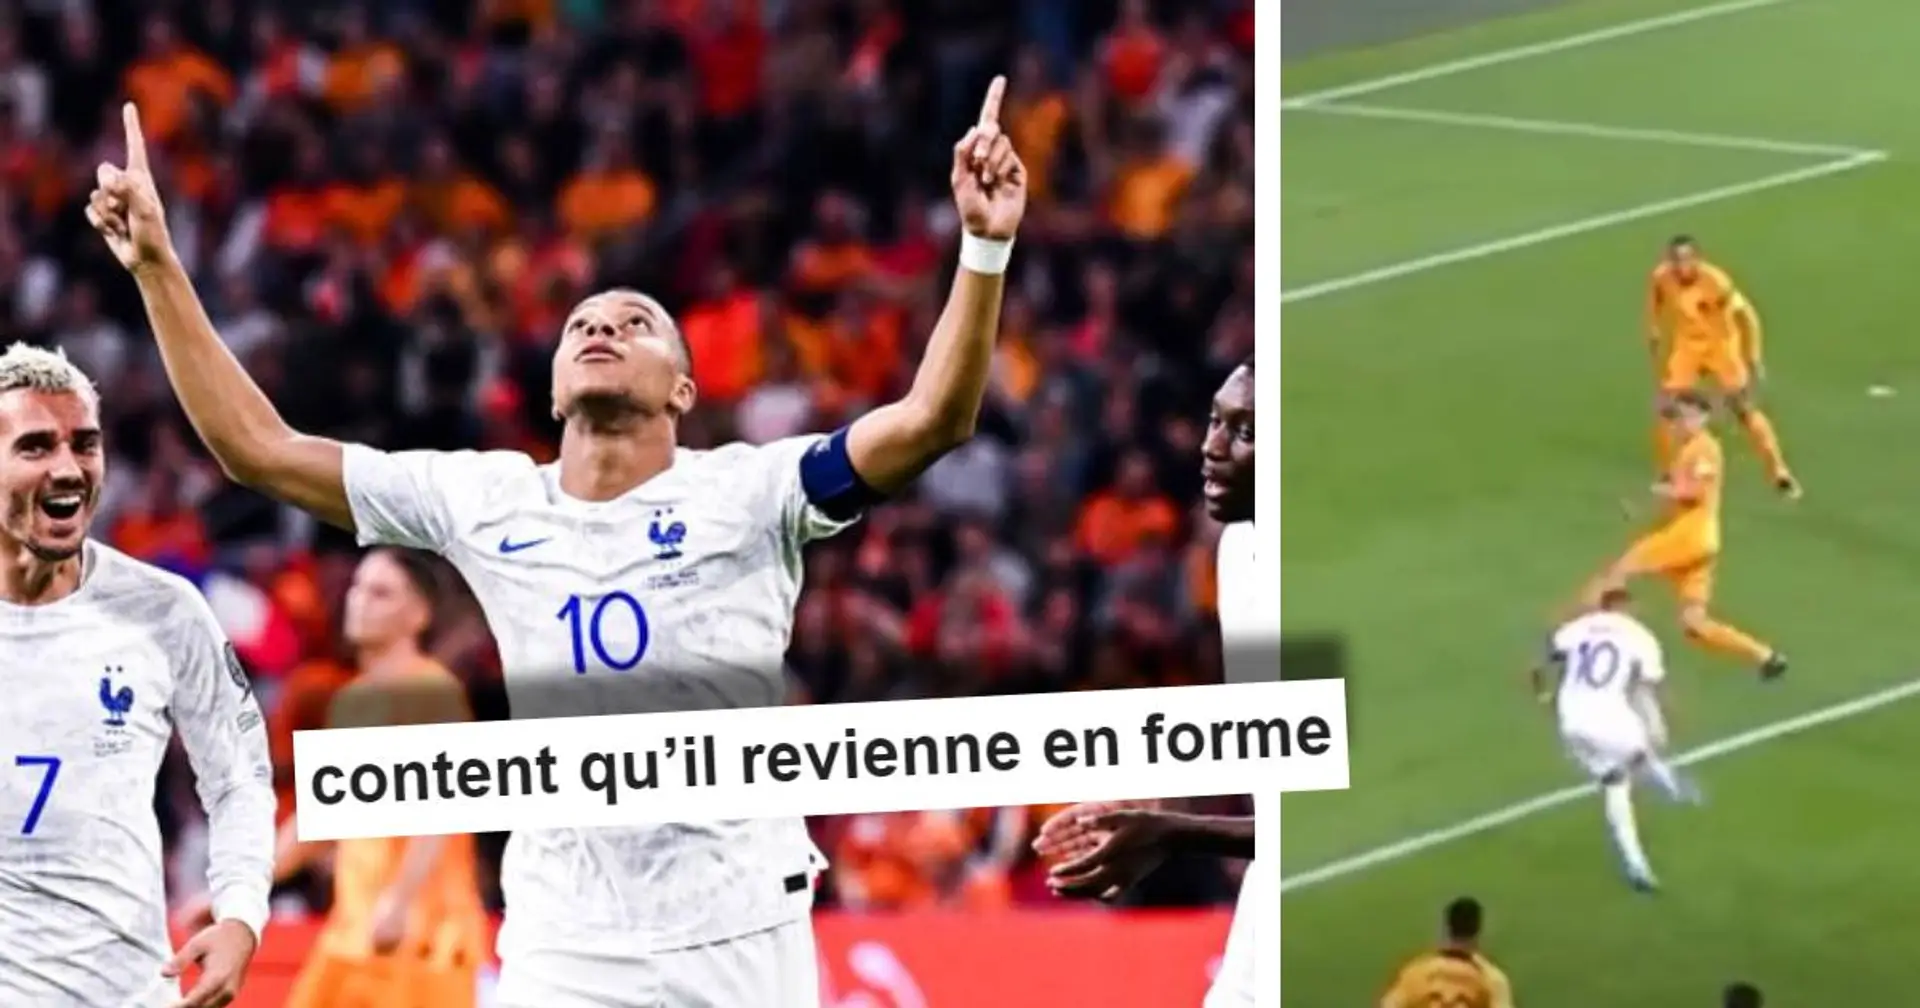 "Il donne l'impression que c'est si facile" : les fans de tout bord réagissent au superbe but de Mbappé vs Pays Bas